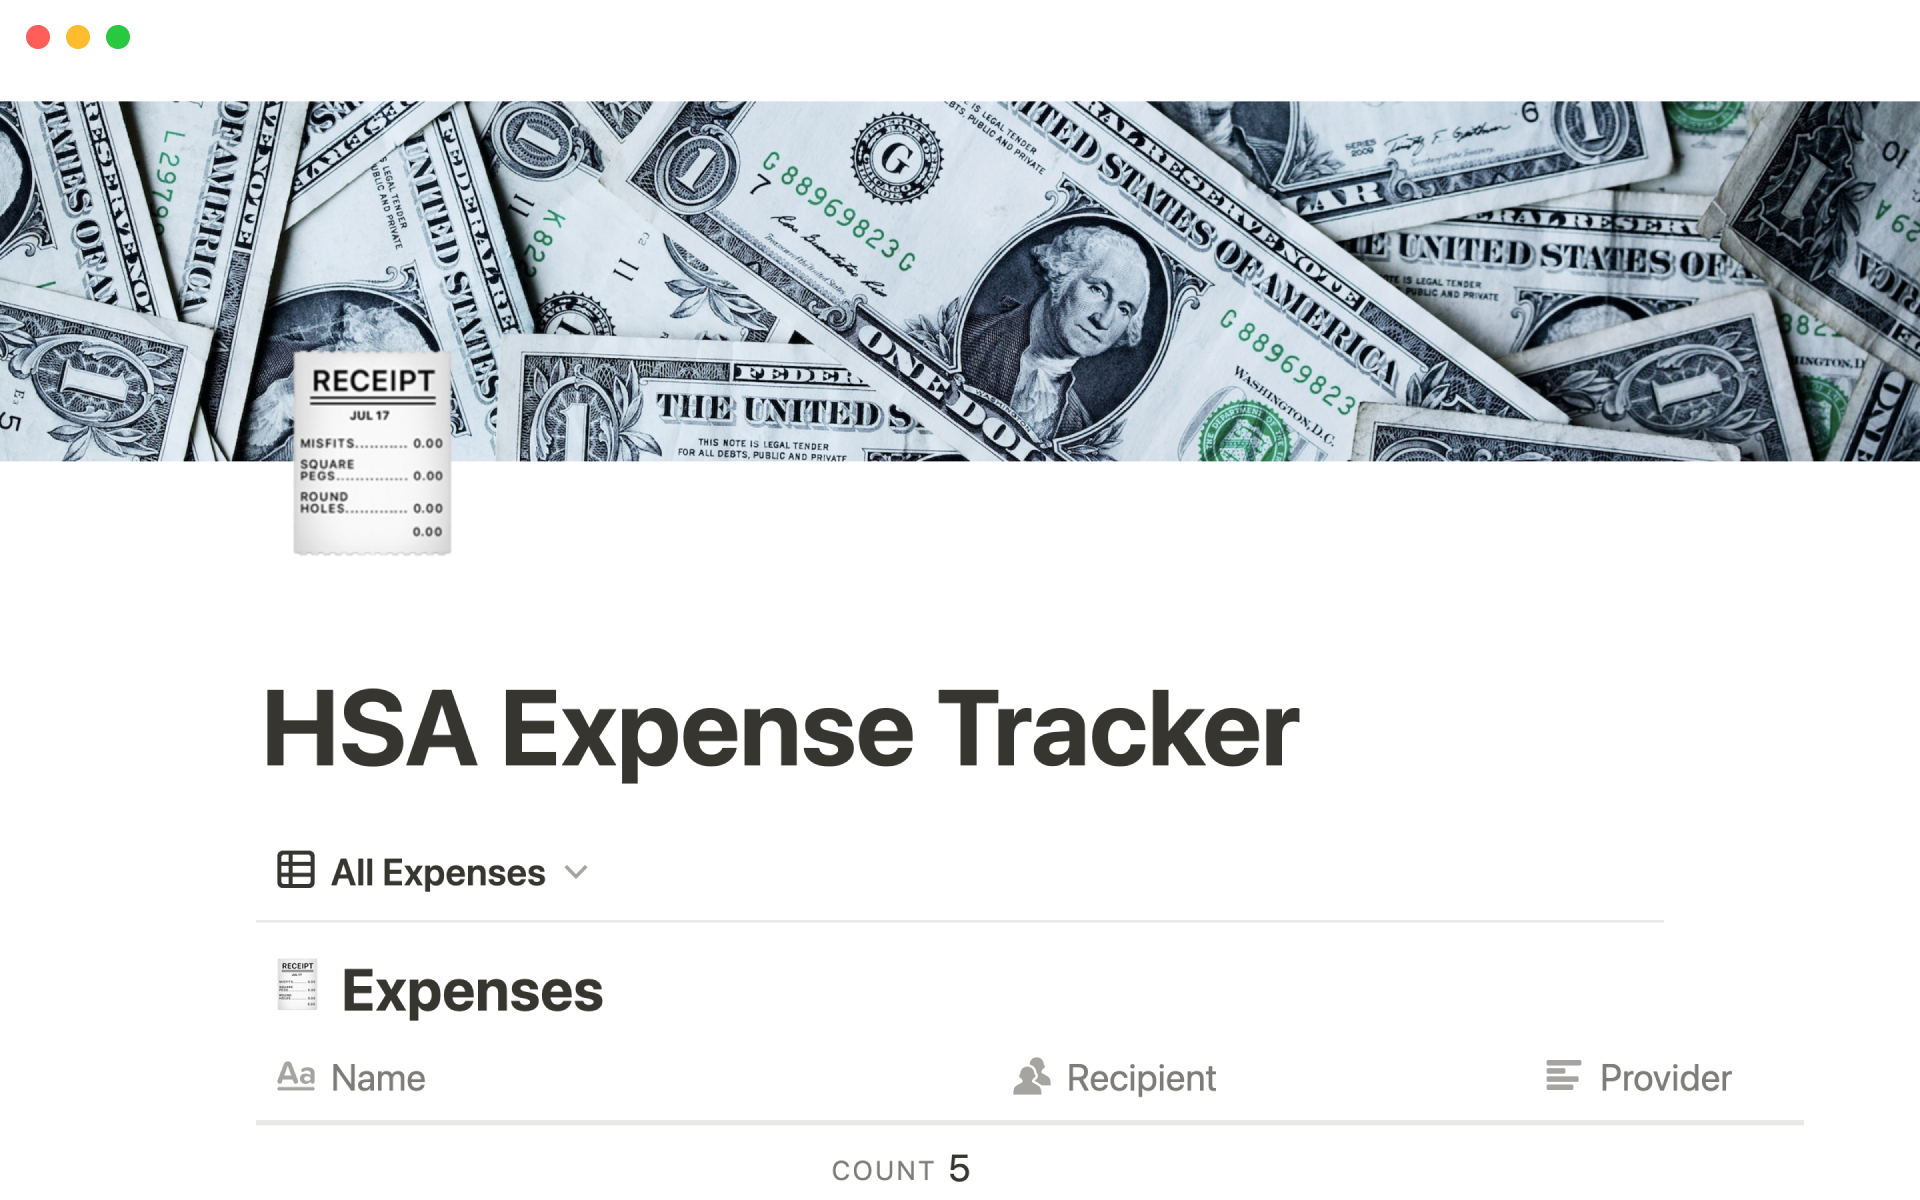 Vista previa de plantilla para HSA expense tracker